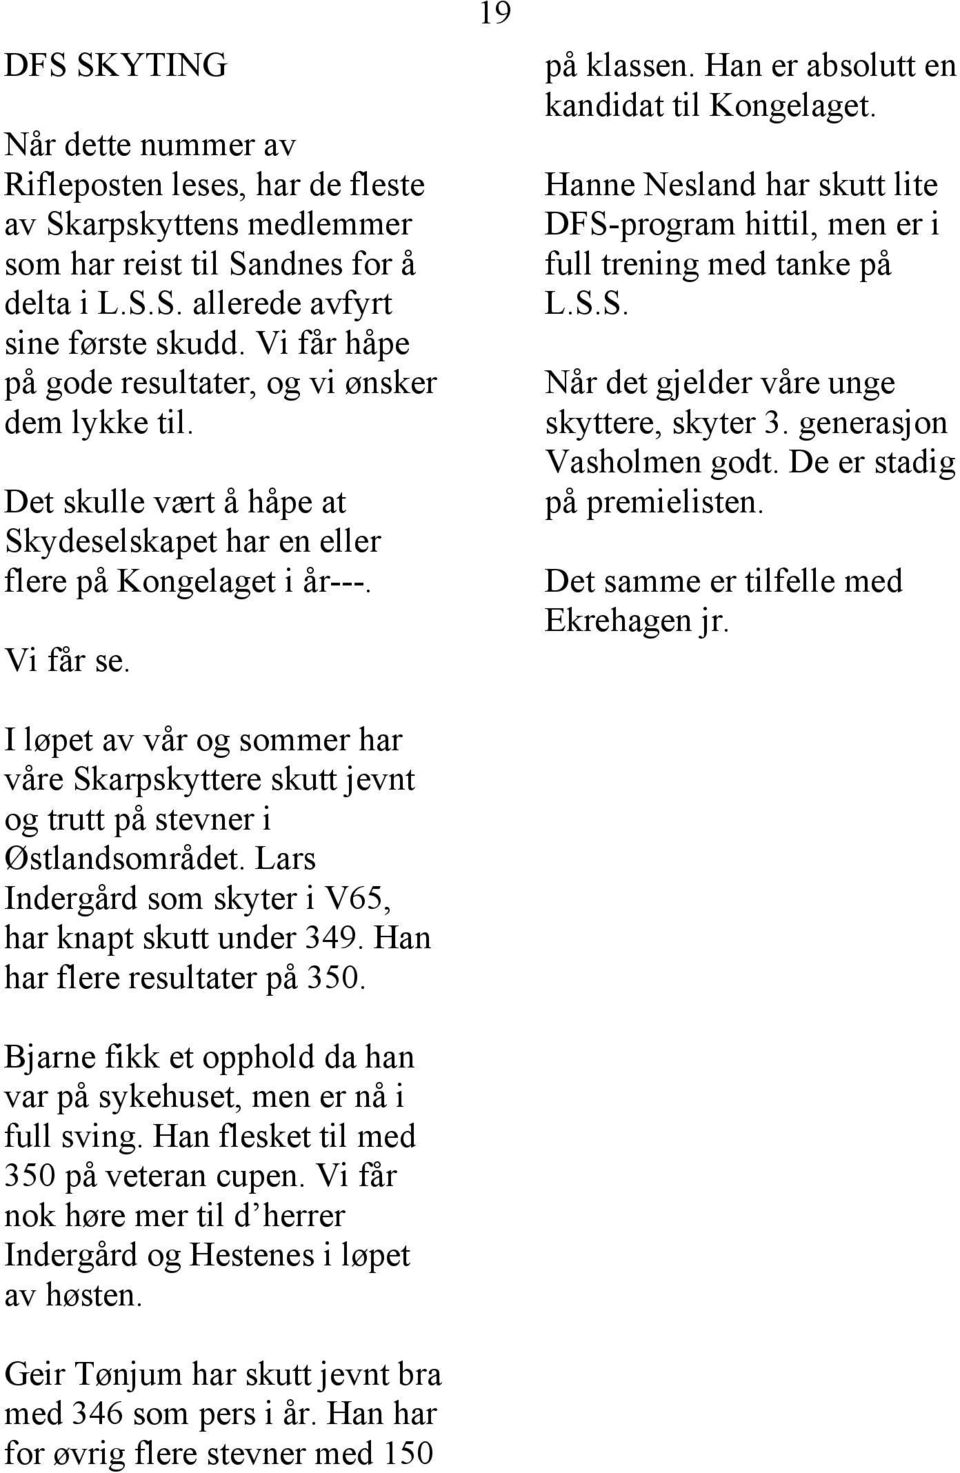 I løpet av vår og sommer har våre Skarpskyttere skutt jevnt og trutt på stevner i Østlandsområdet. Lars Indergård som skyter i V65, har knapt skutt under 349. Han har flere resultater på 350.